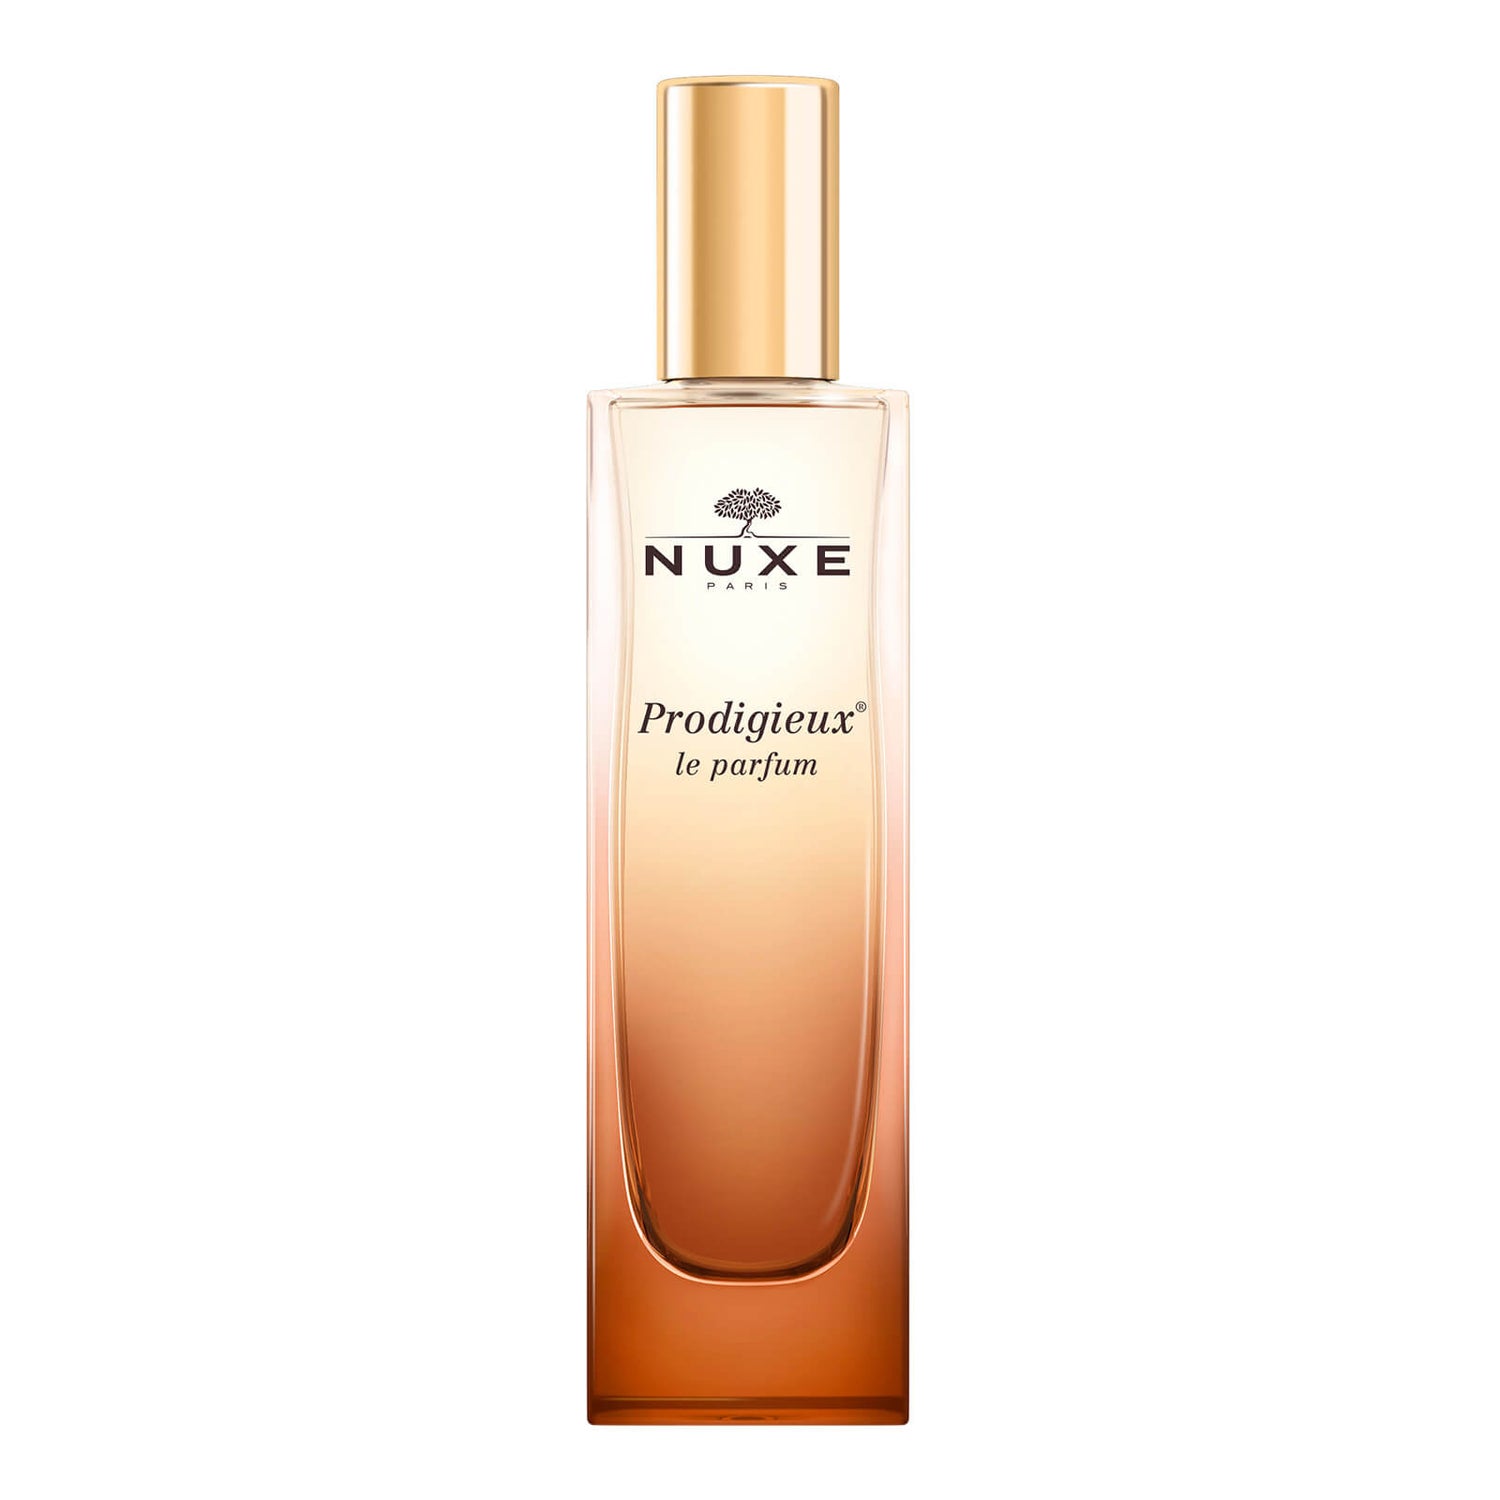 Prodigieux® Le parfum 50ml